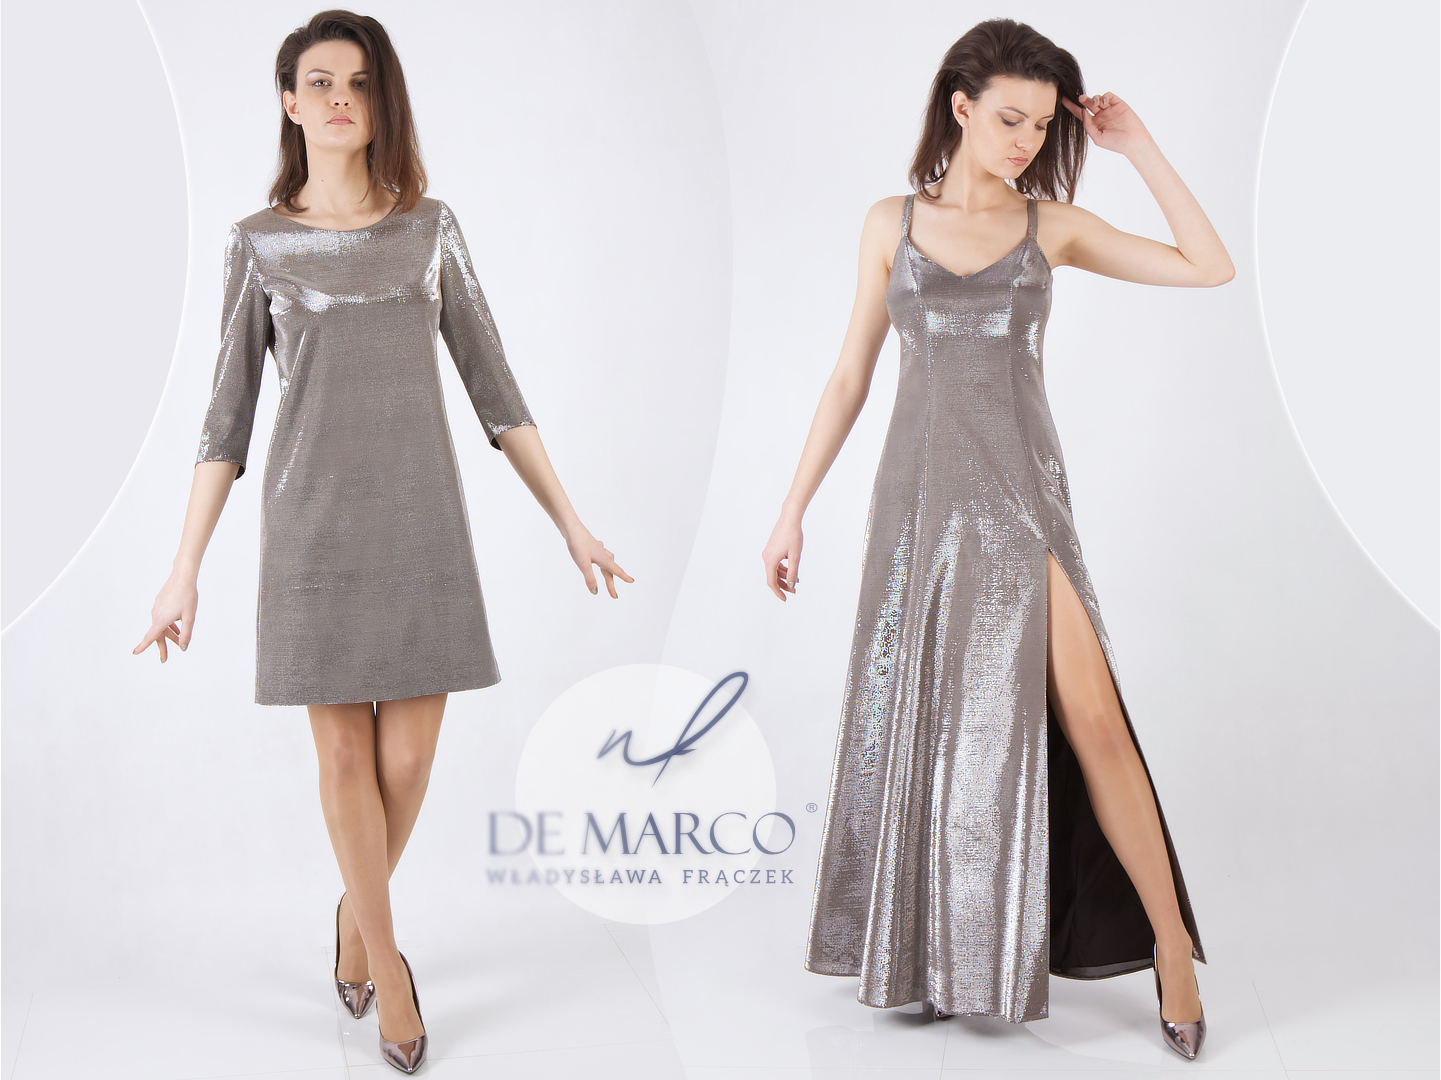 Sinnliche Eleganz: Die luxuriösen Abendkleider von De Marco mit metallischem Silberglanz